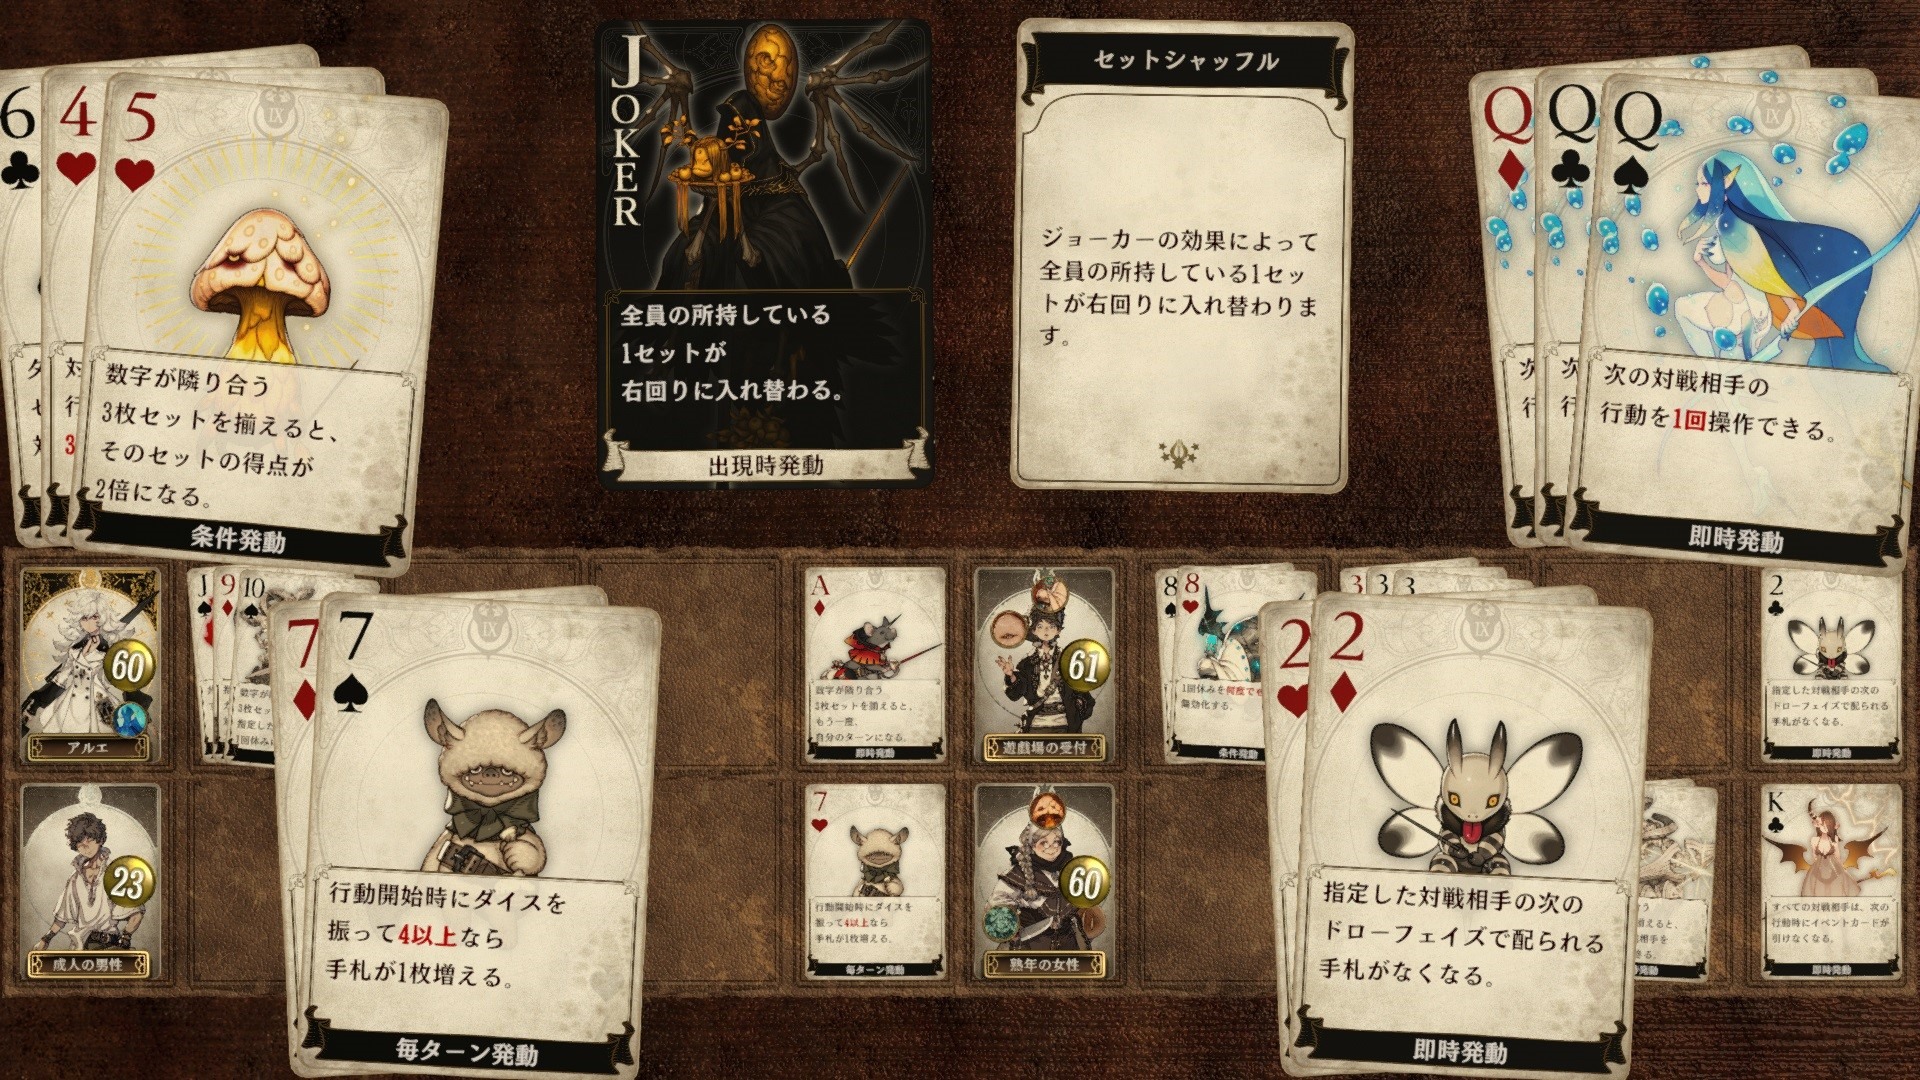 卡牌 TRPG 第三作《Voice of Cards 被囚禁的魔物》曝光 游戏 GM 由石川由依担纲